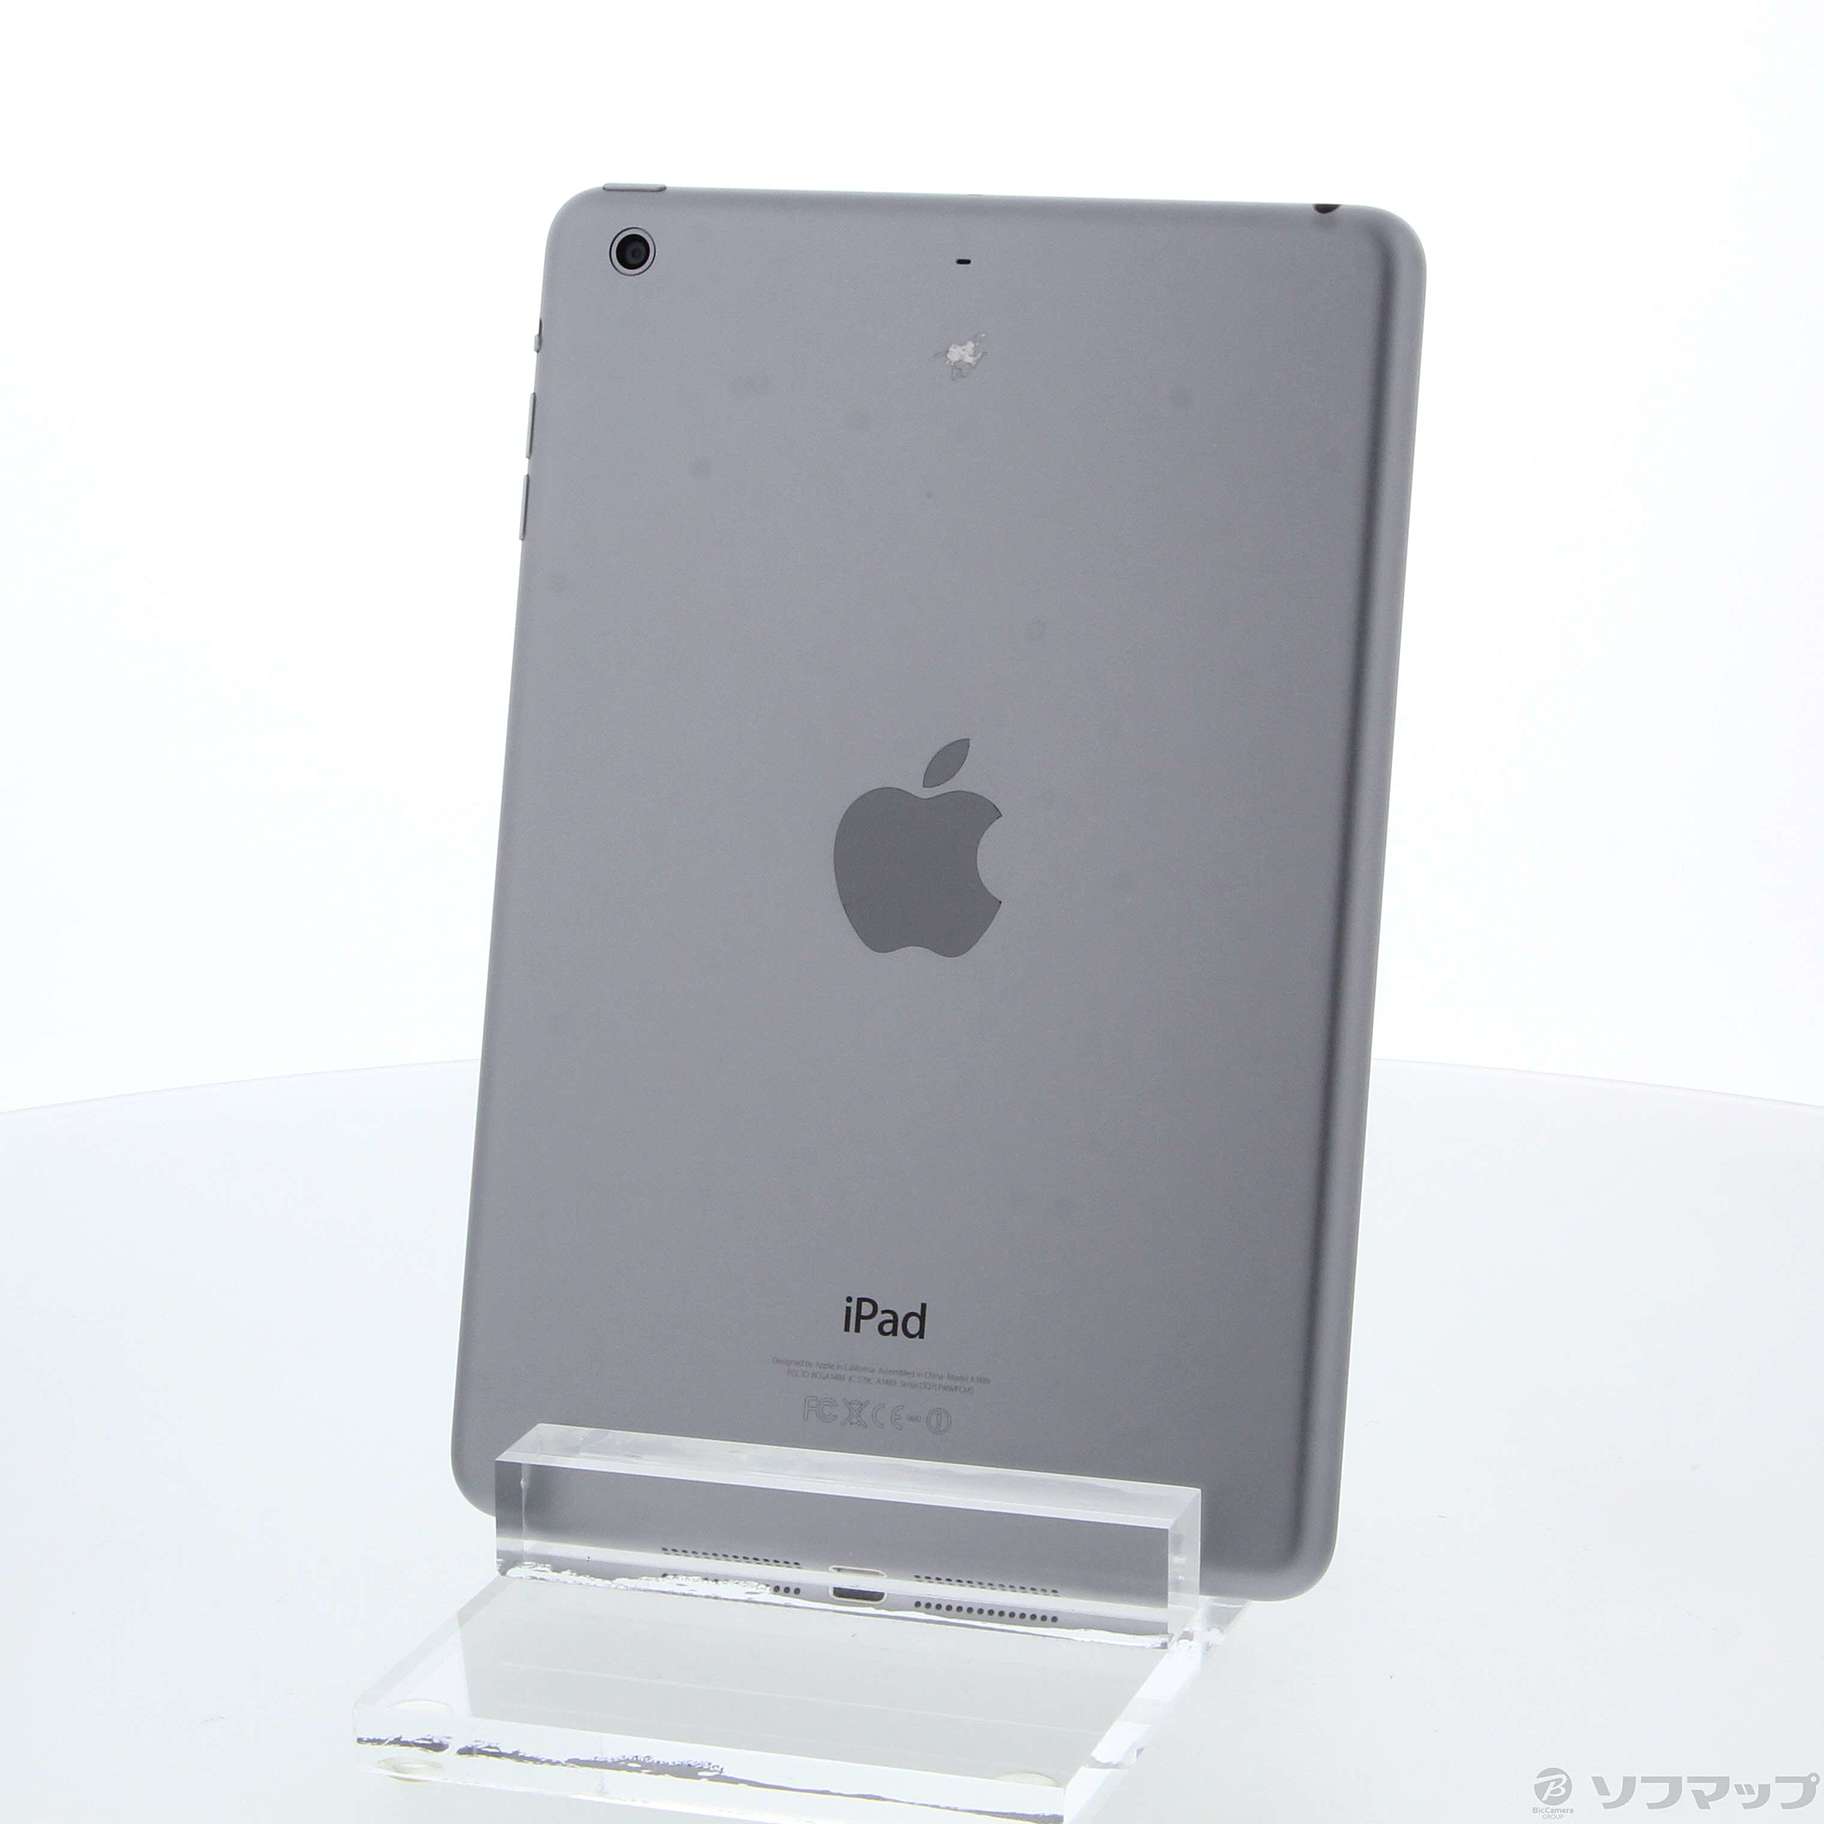 iPad mini 2 16GB スペースグレイPC/タブレット